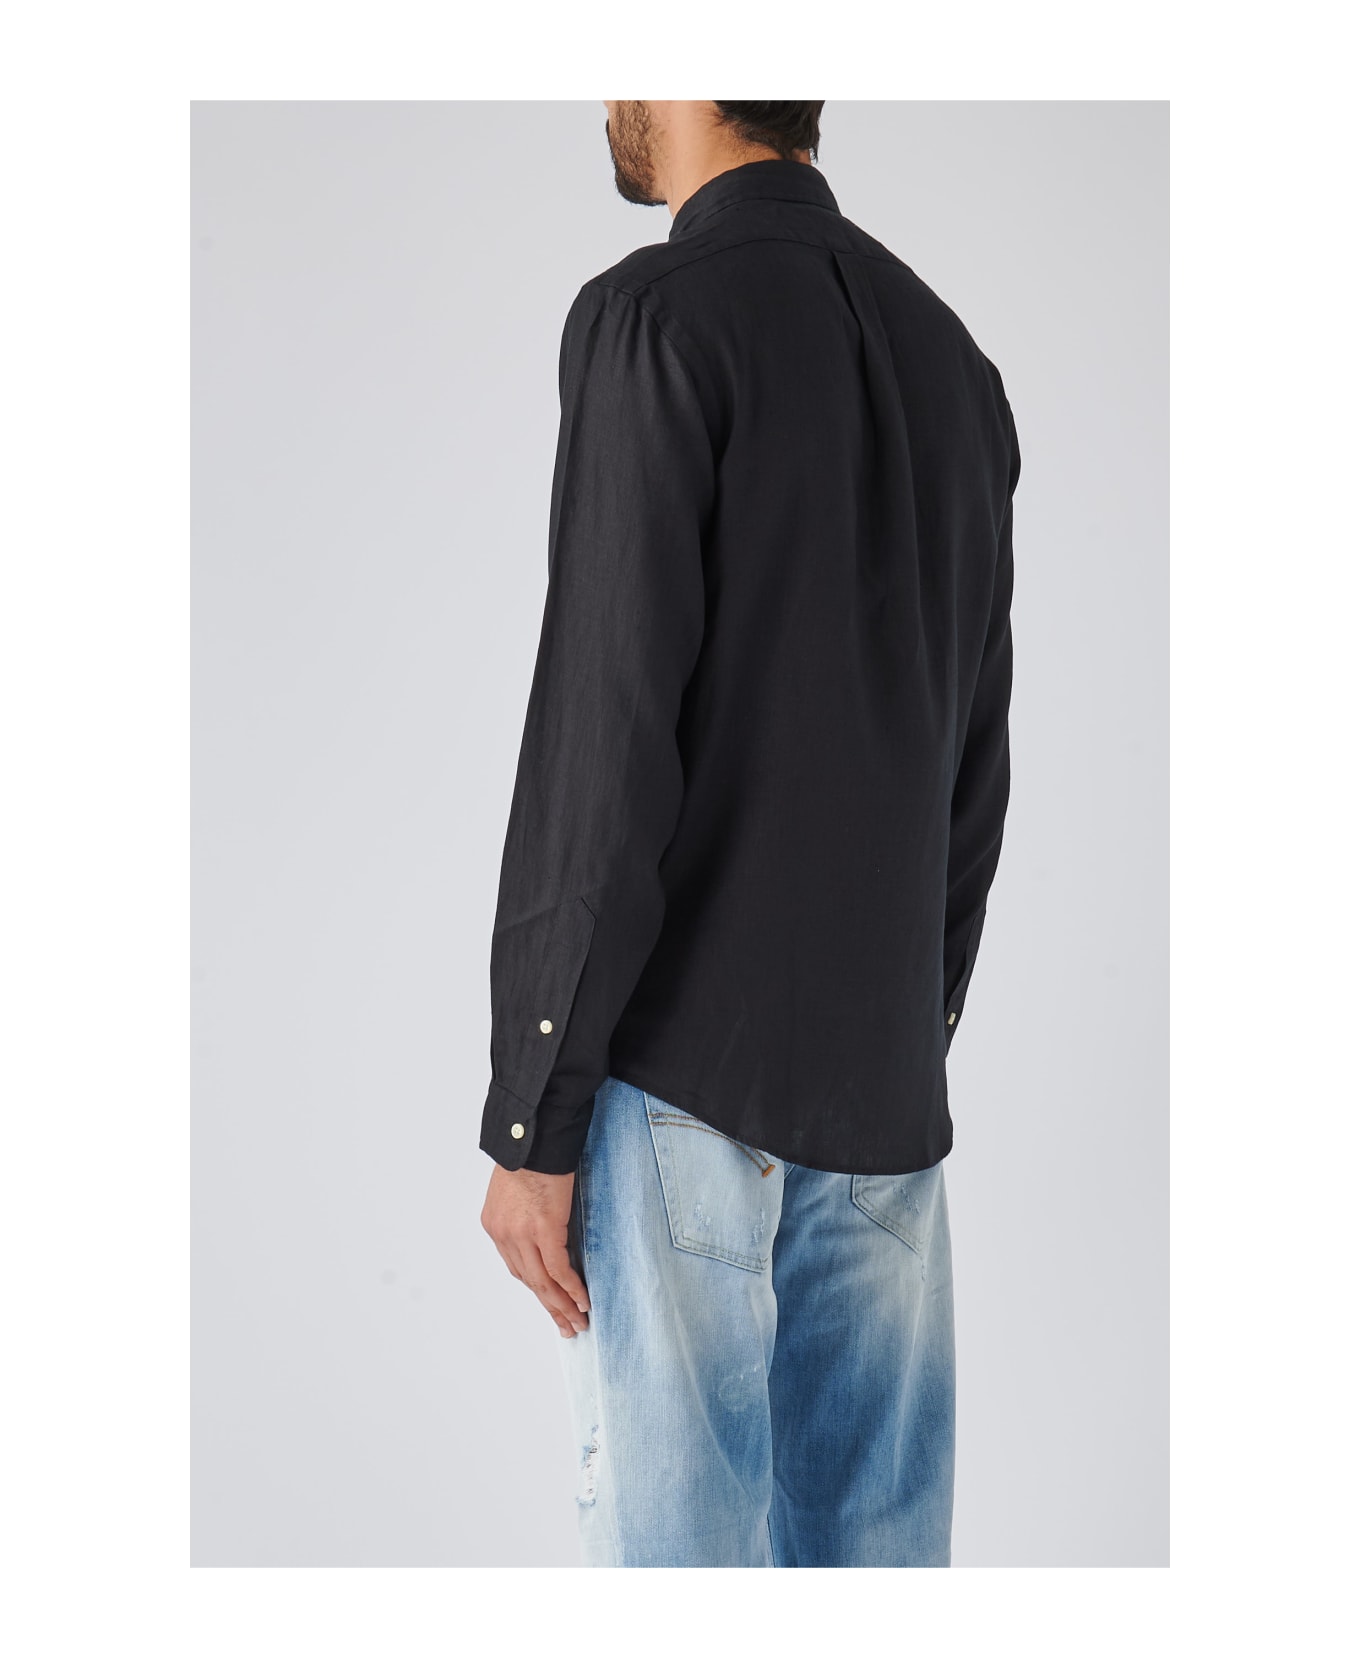 Polo Ralph Lauren Long Sleeve Sport Shirt Shirt - BLK シャツ